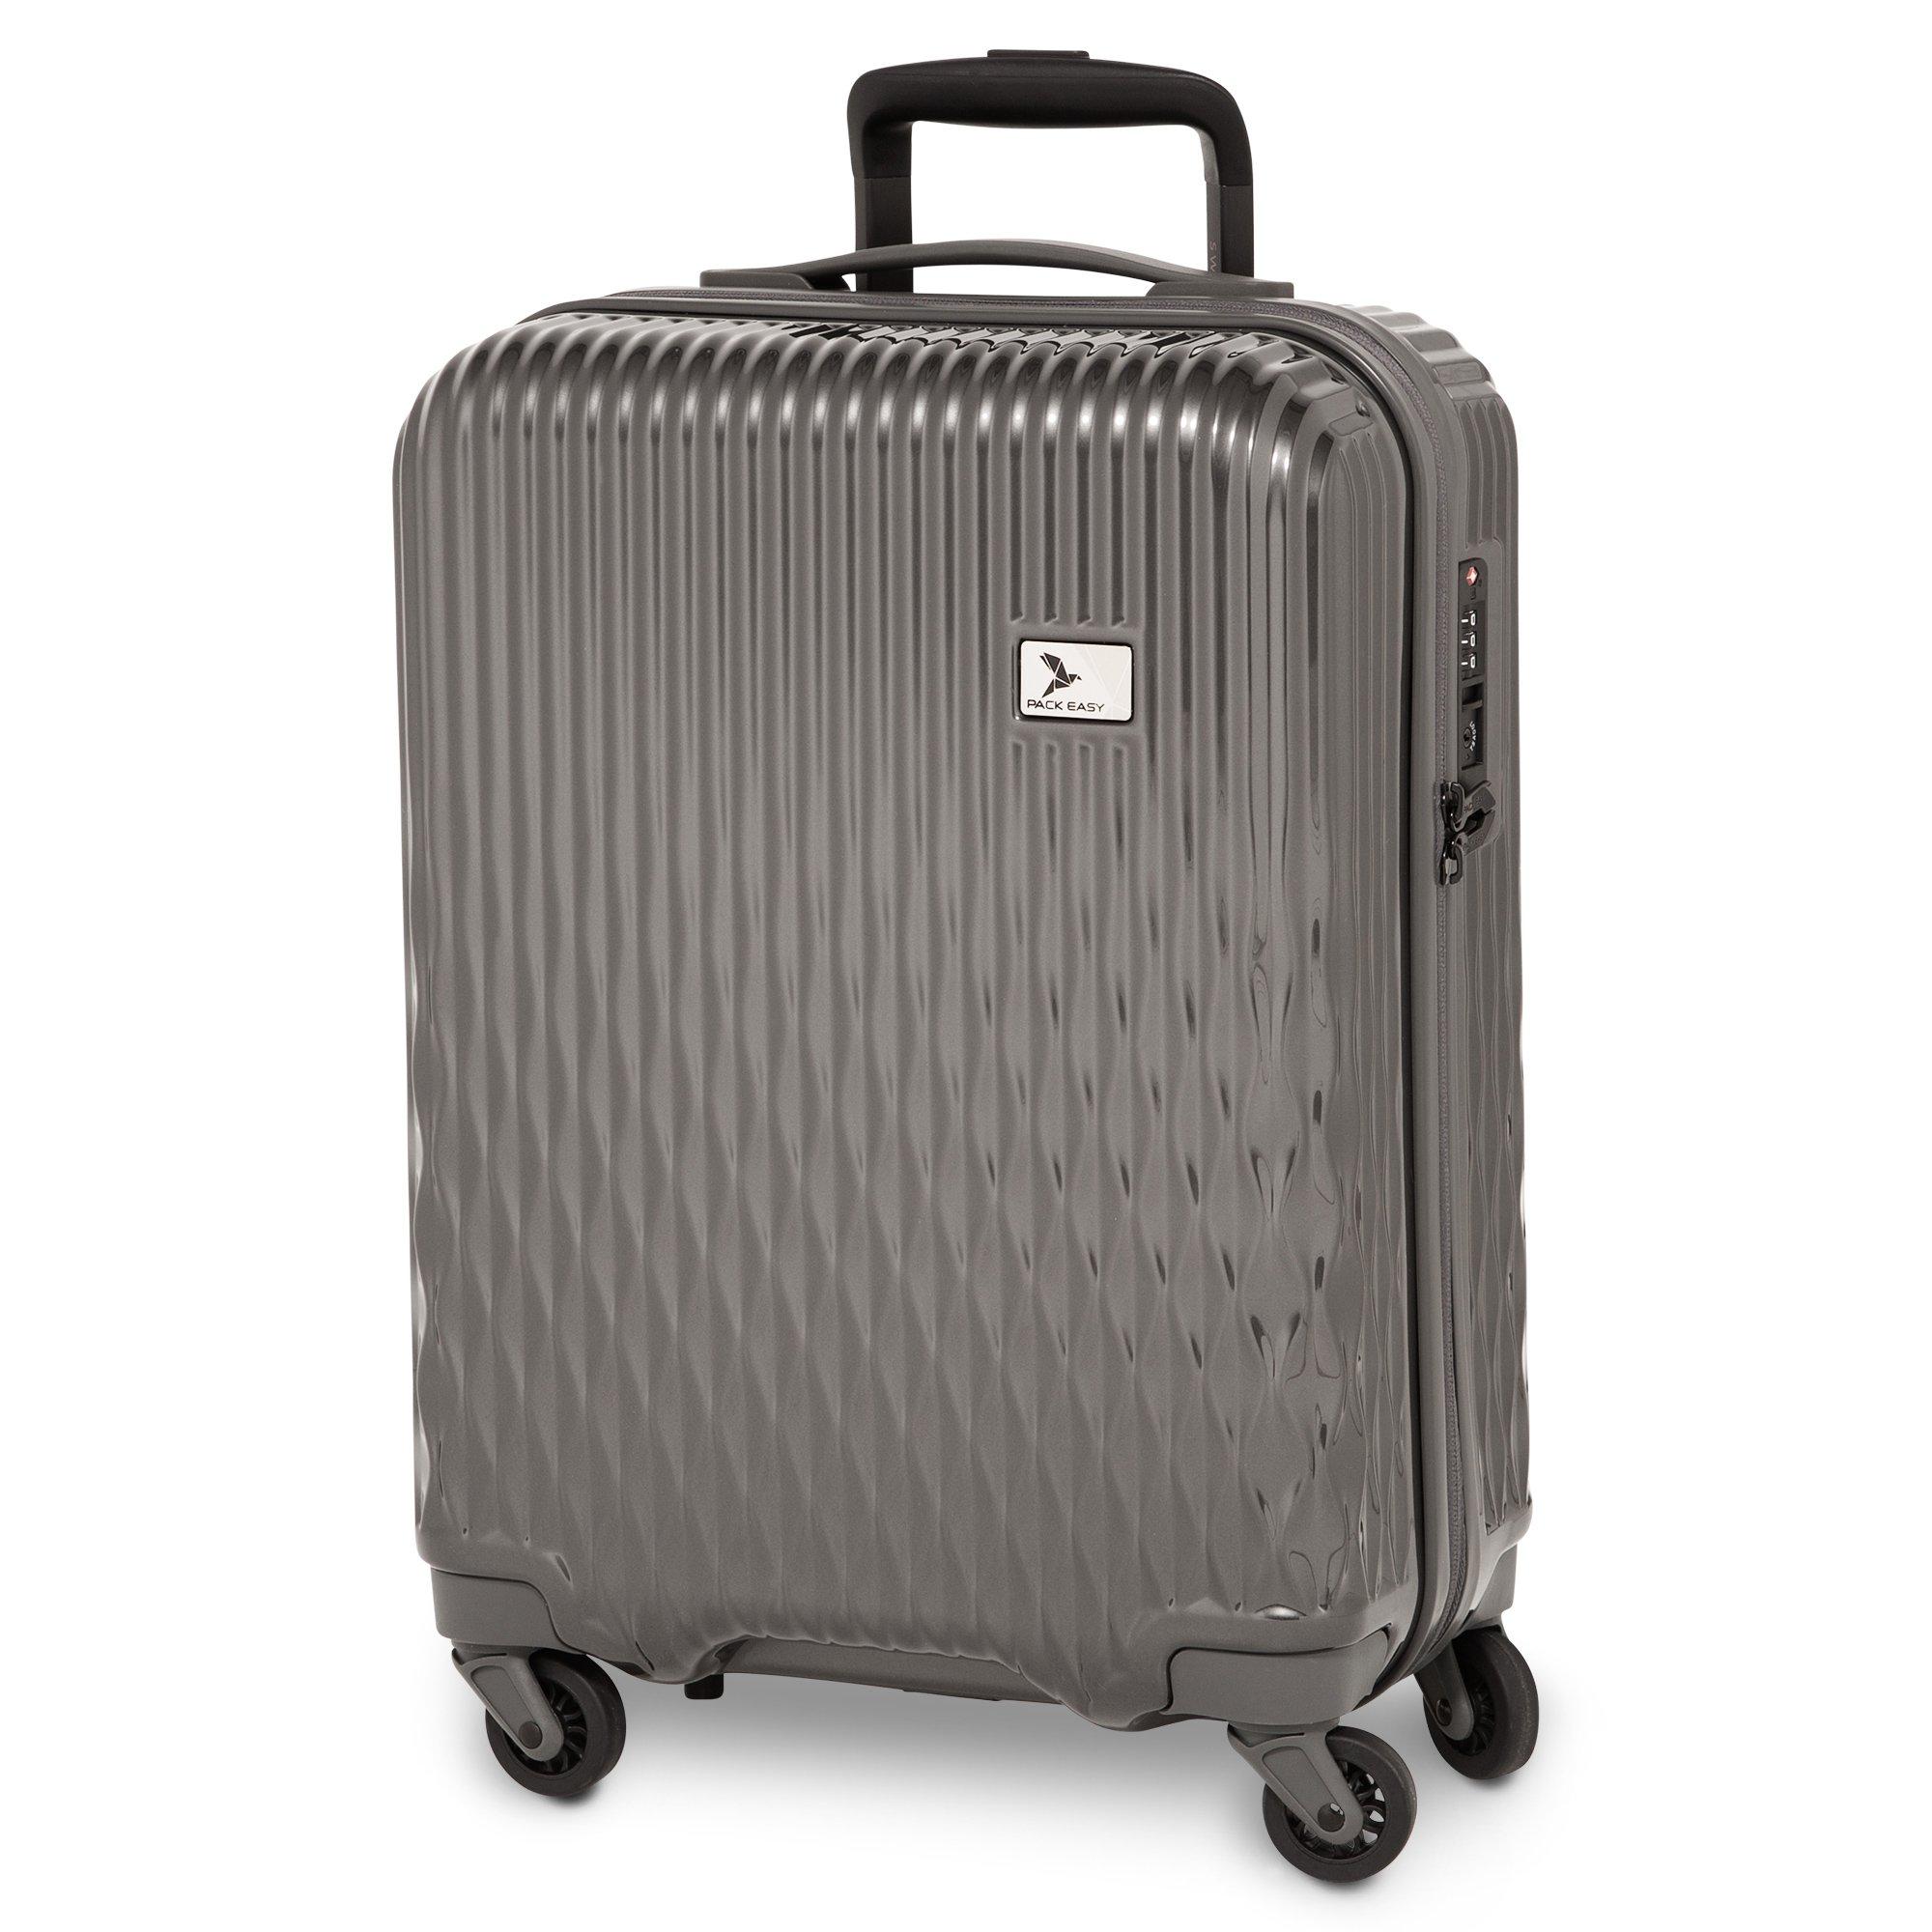 Pack 3 maletas  Basics solo 101€  Koffer, Hartschalen koffer,  Reißverschlusstasche